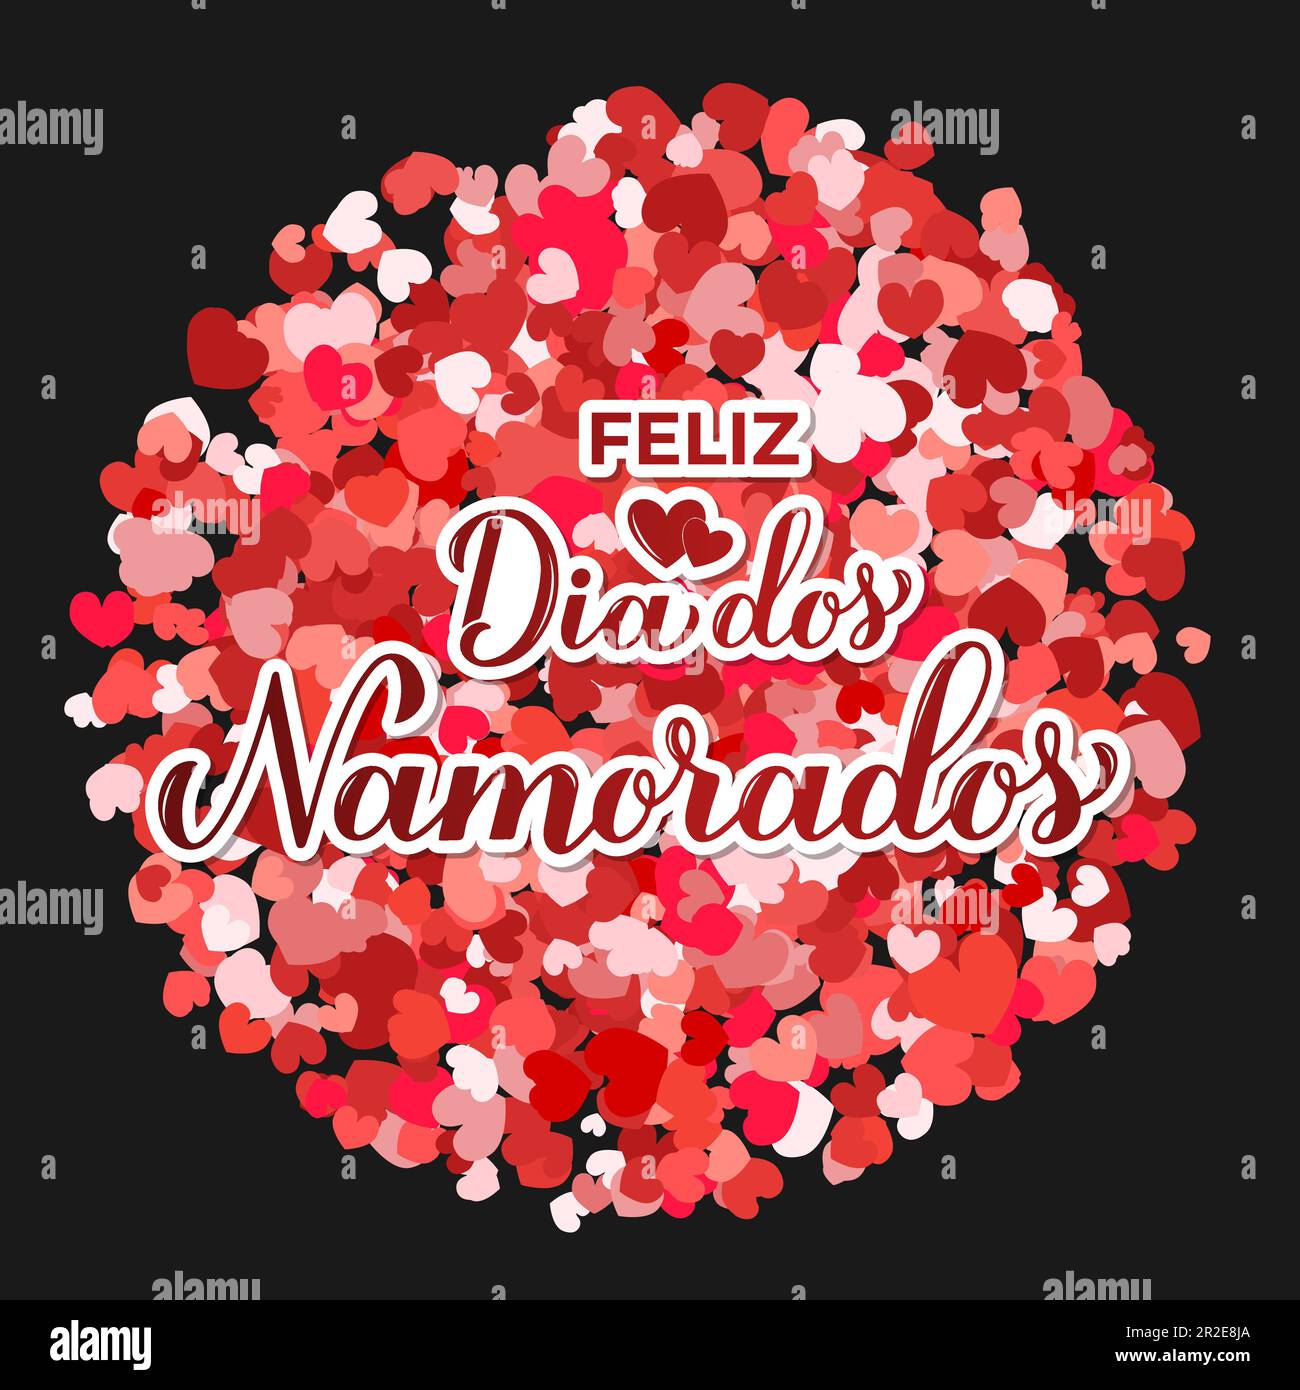 Dia dos namorados 12 de junio brasil día de los enamorados de los enamorados  vector de diseño de cartel de pareja de flores de san valentín